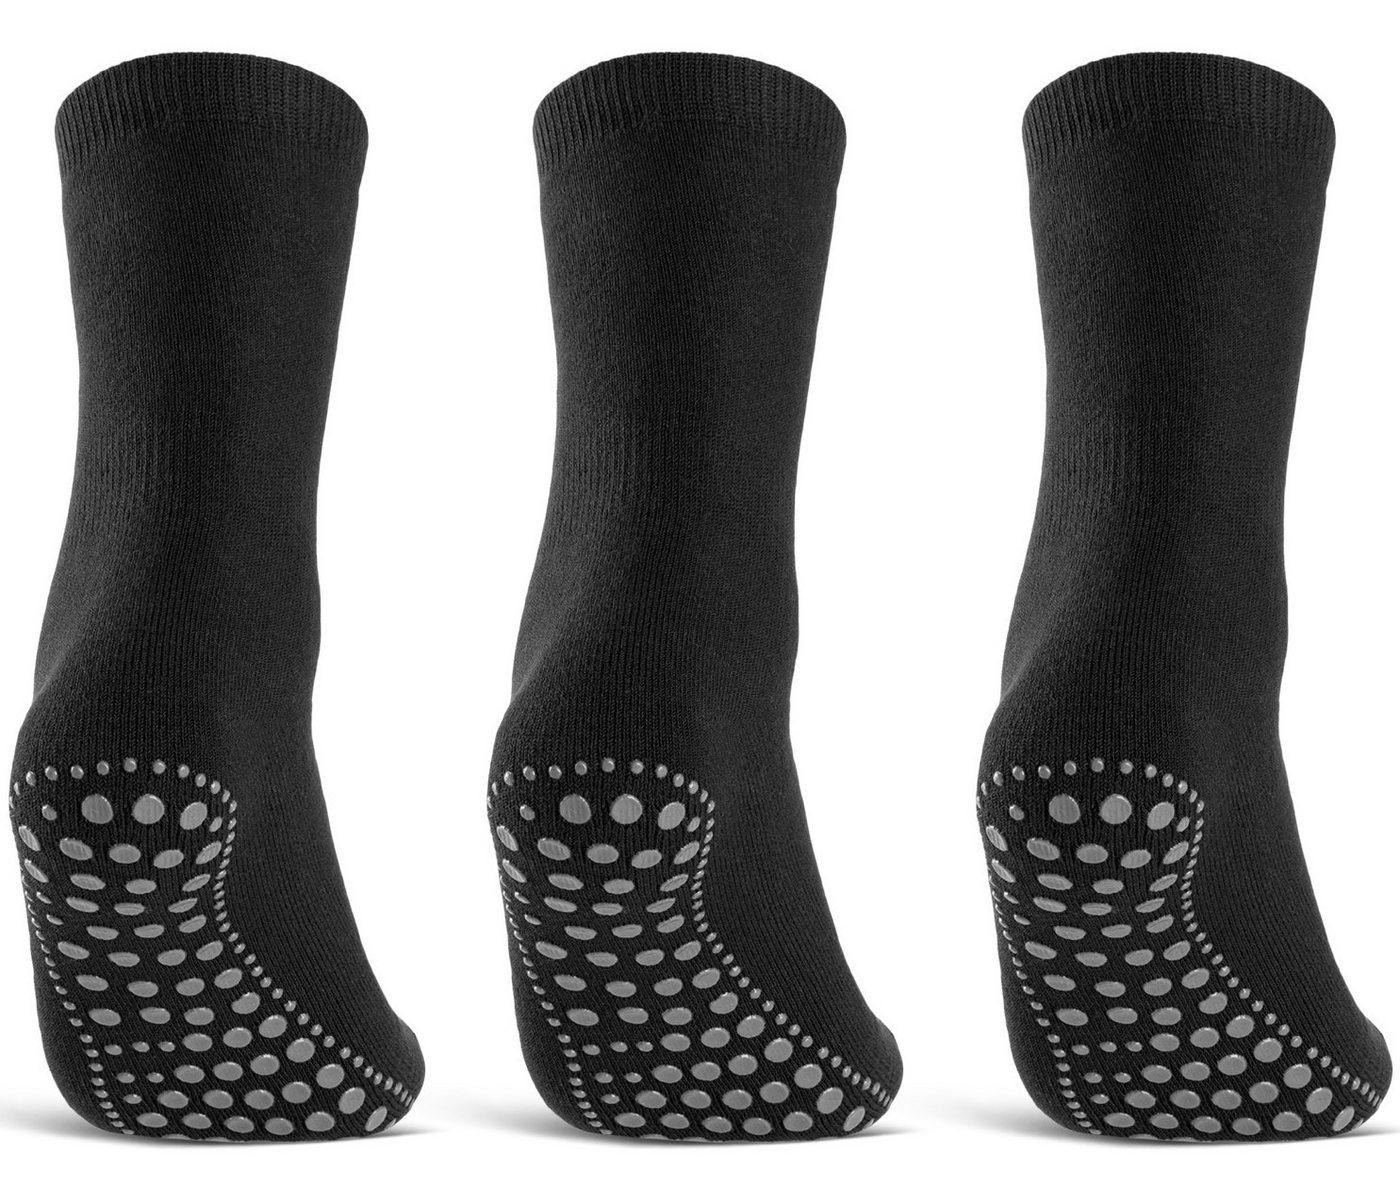 sockenkauf24 ABS-Socken 3 oder 6 Paar "Premium" Anti Rutsch Socken Damen Herren (Schwarz, 3-Paar, 35-38) ABS Socken Noppen Stoppersocken - 8600 WP von sockenkauf24